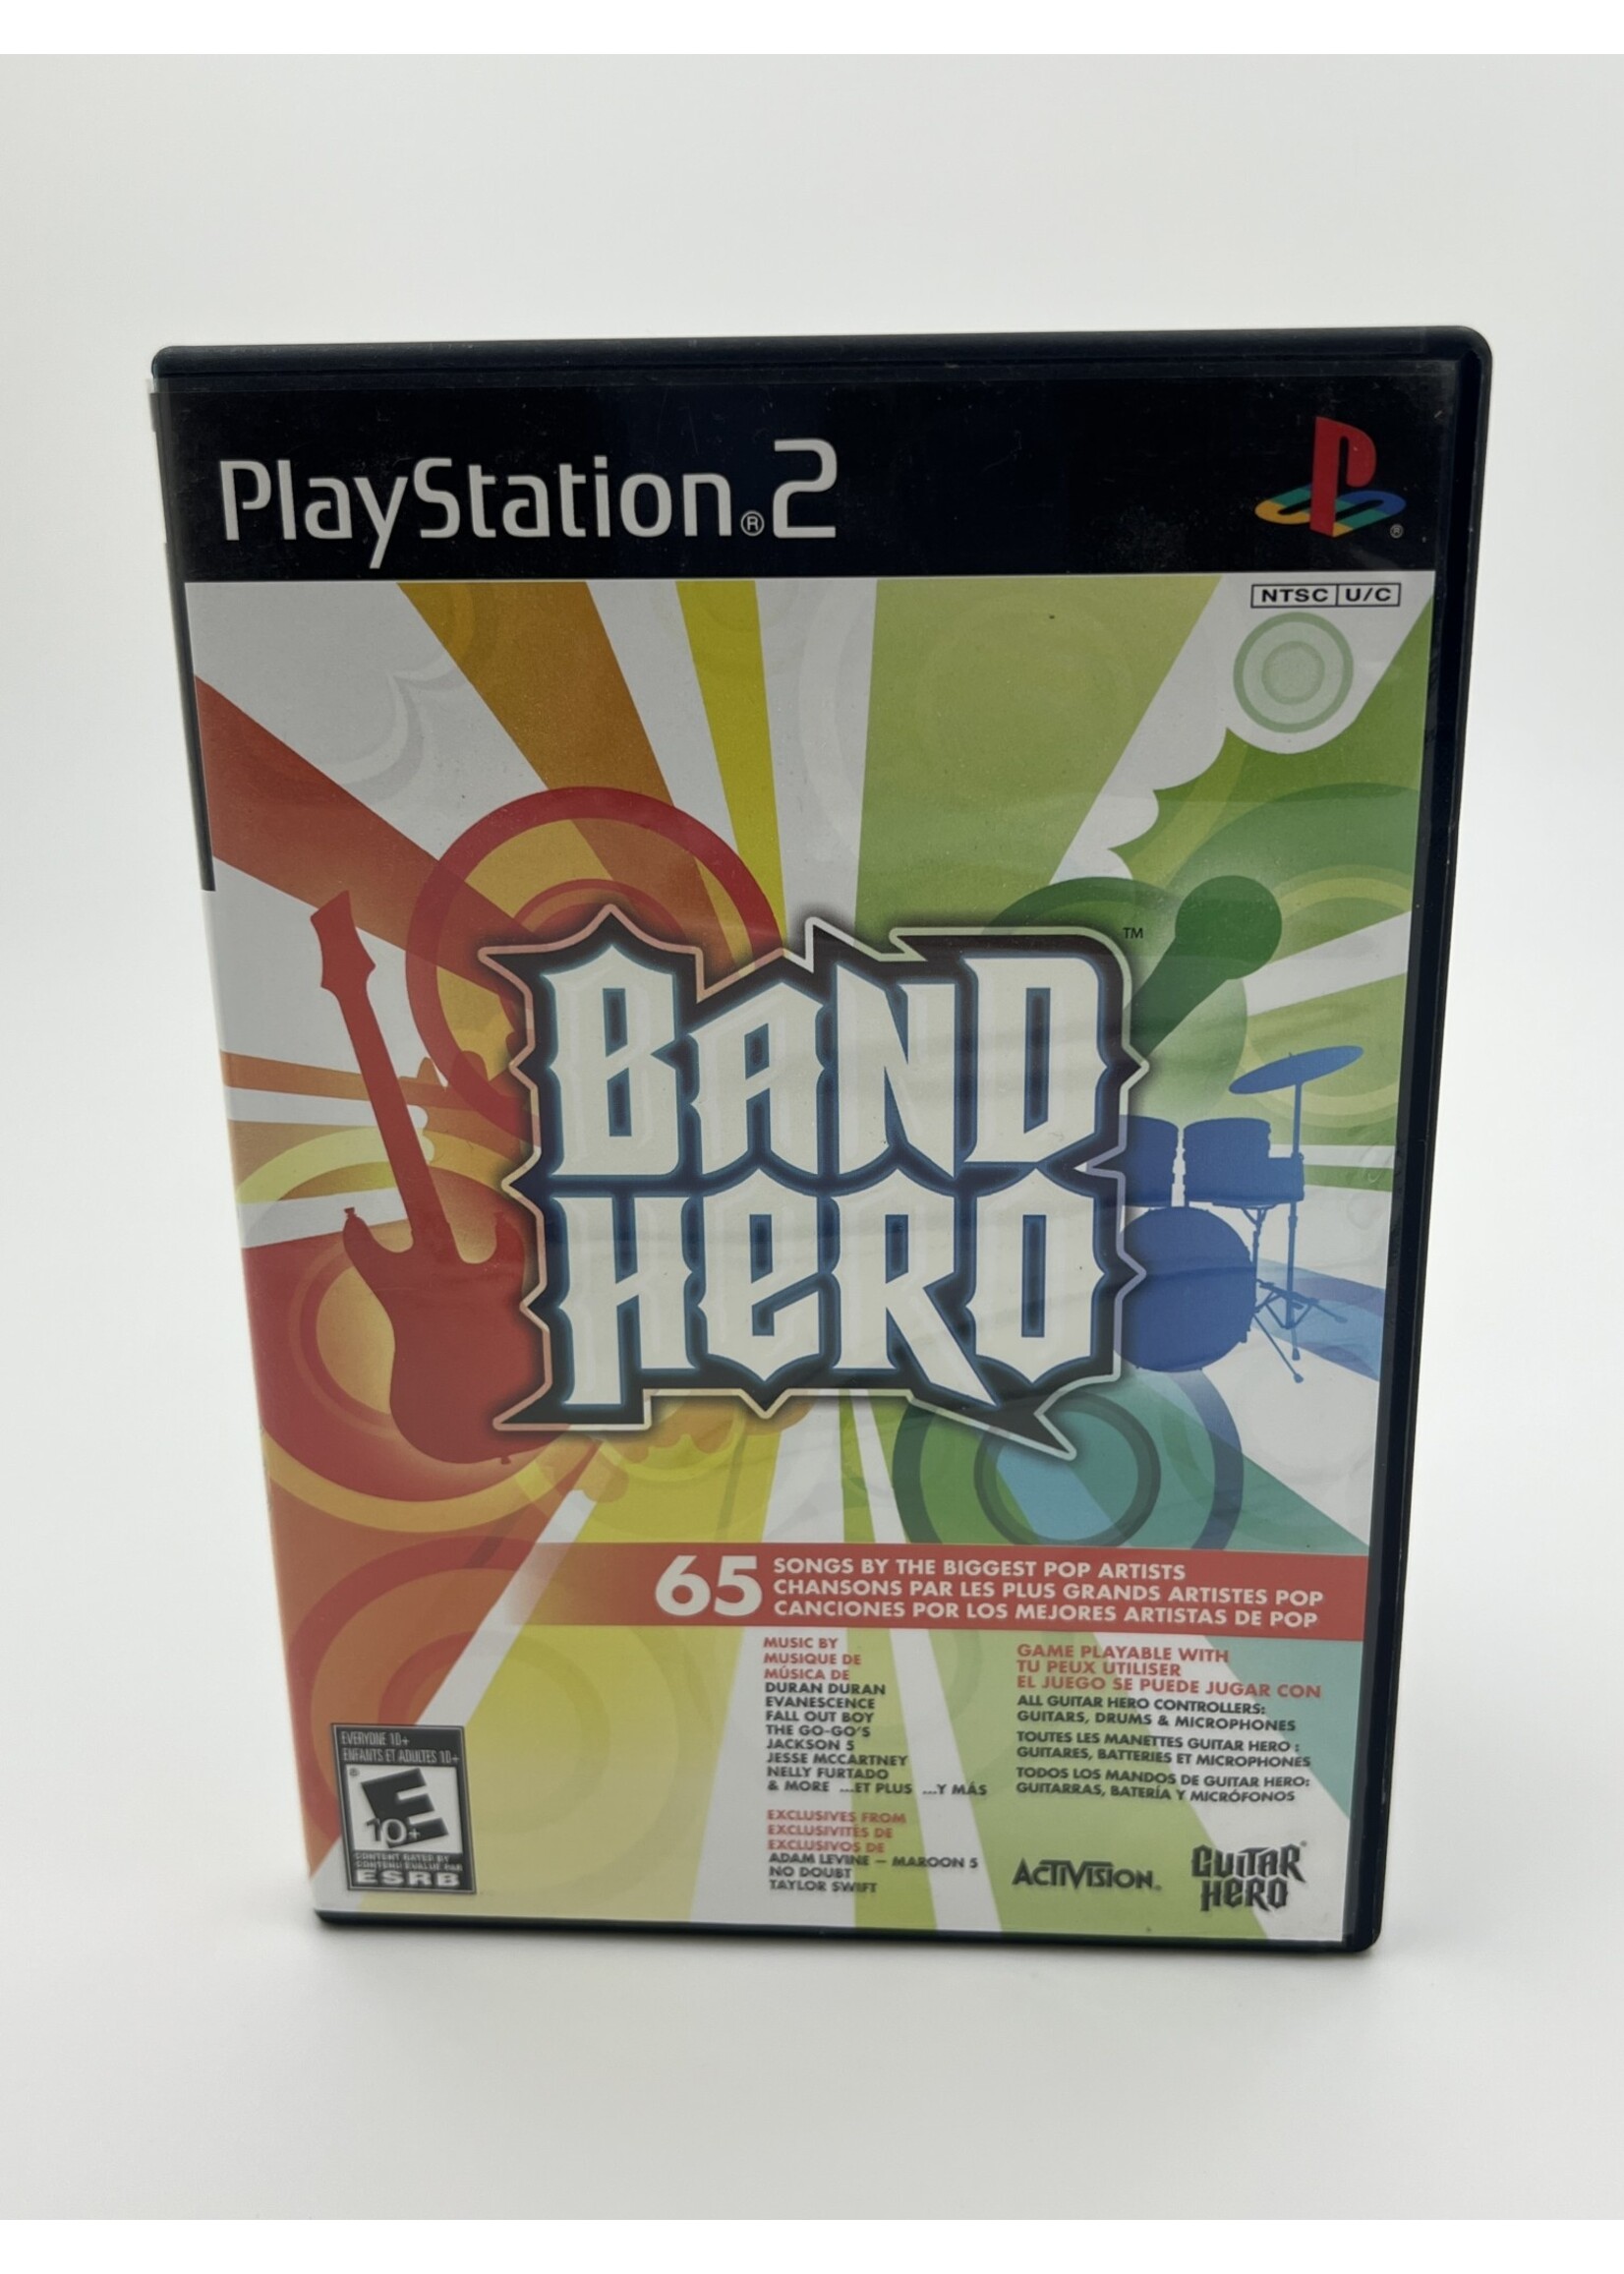 Sony Band Hero PS2